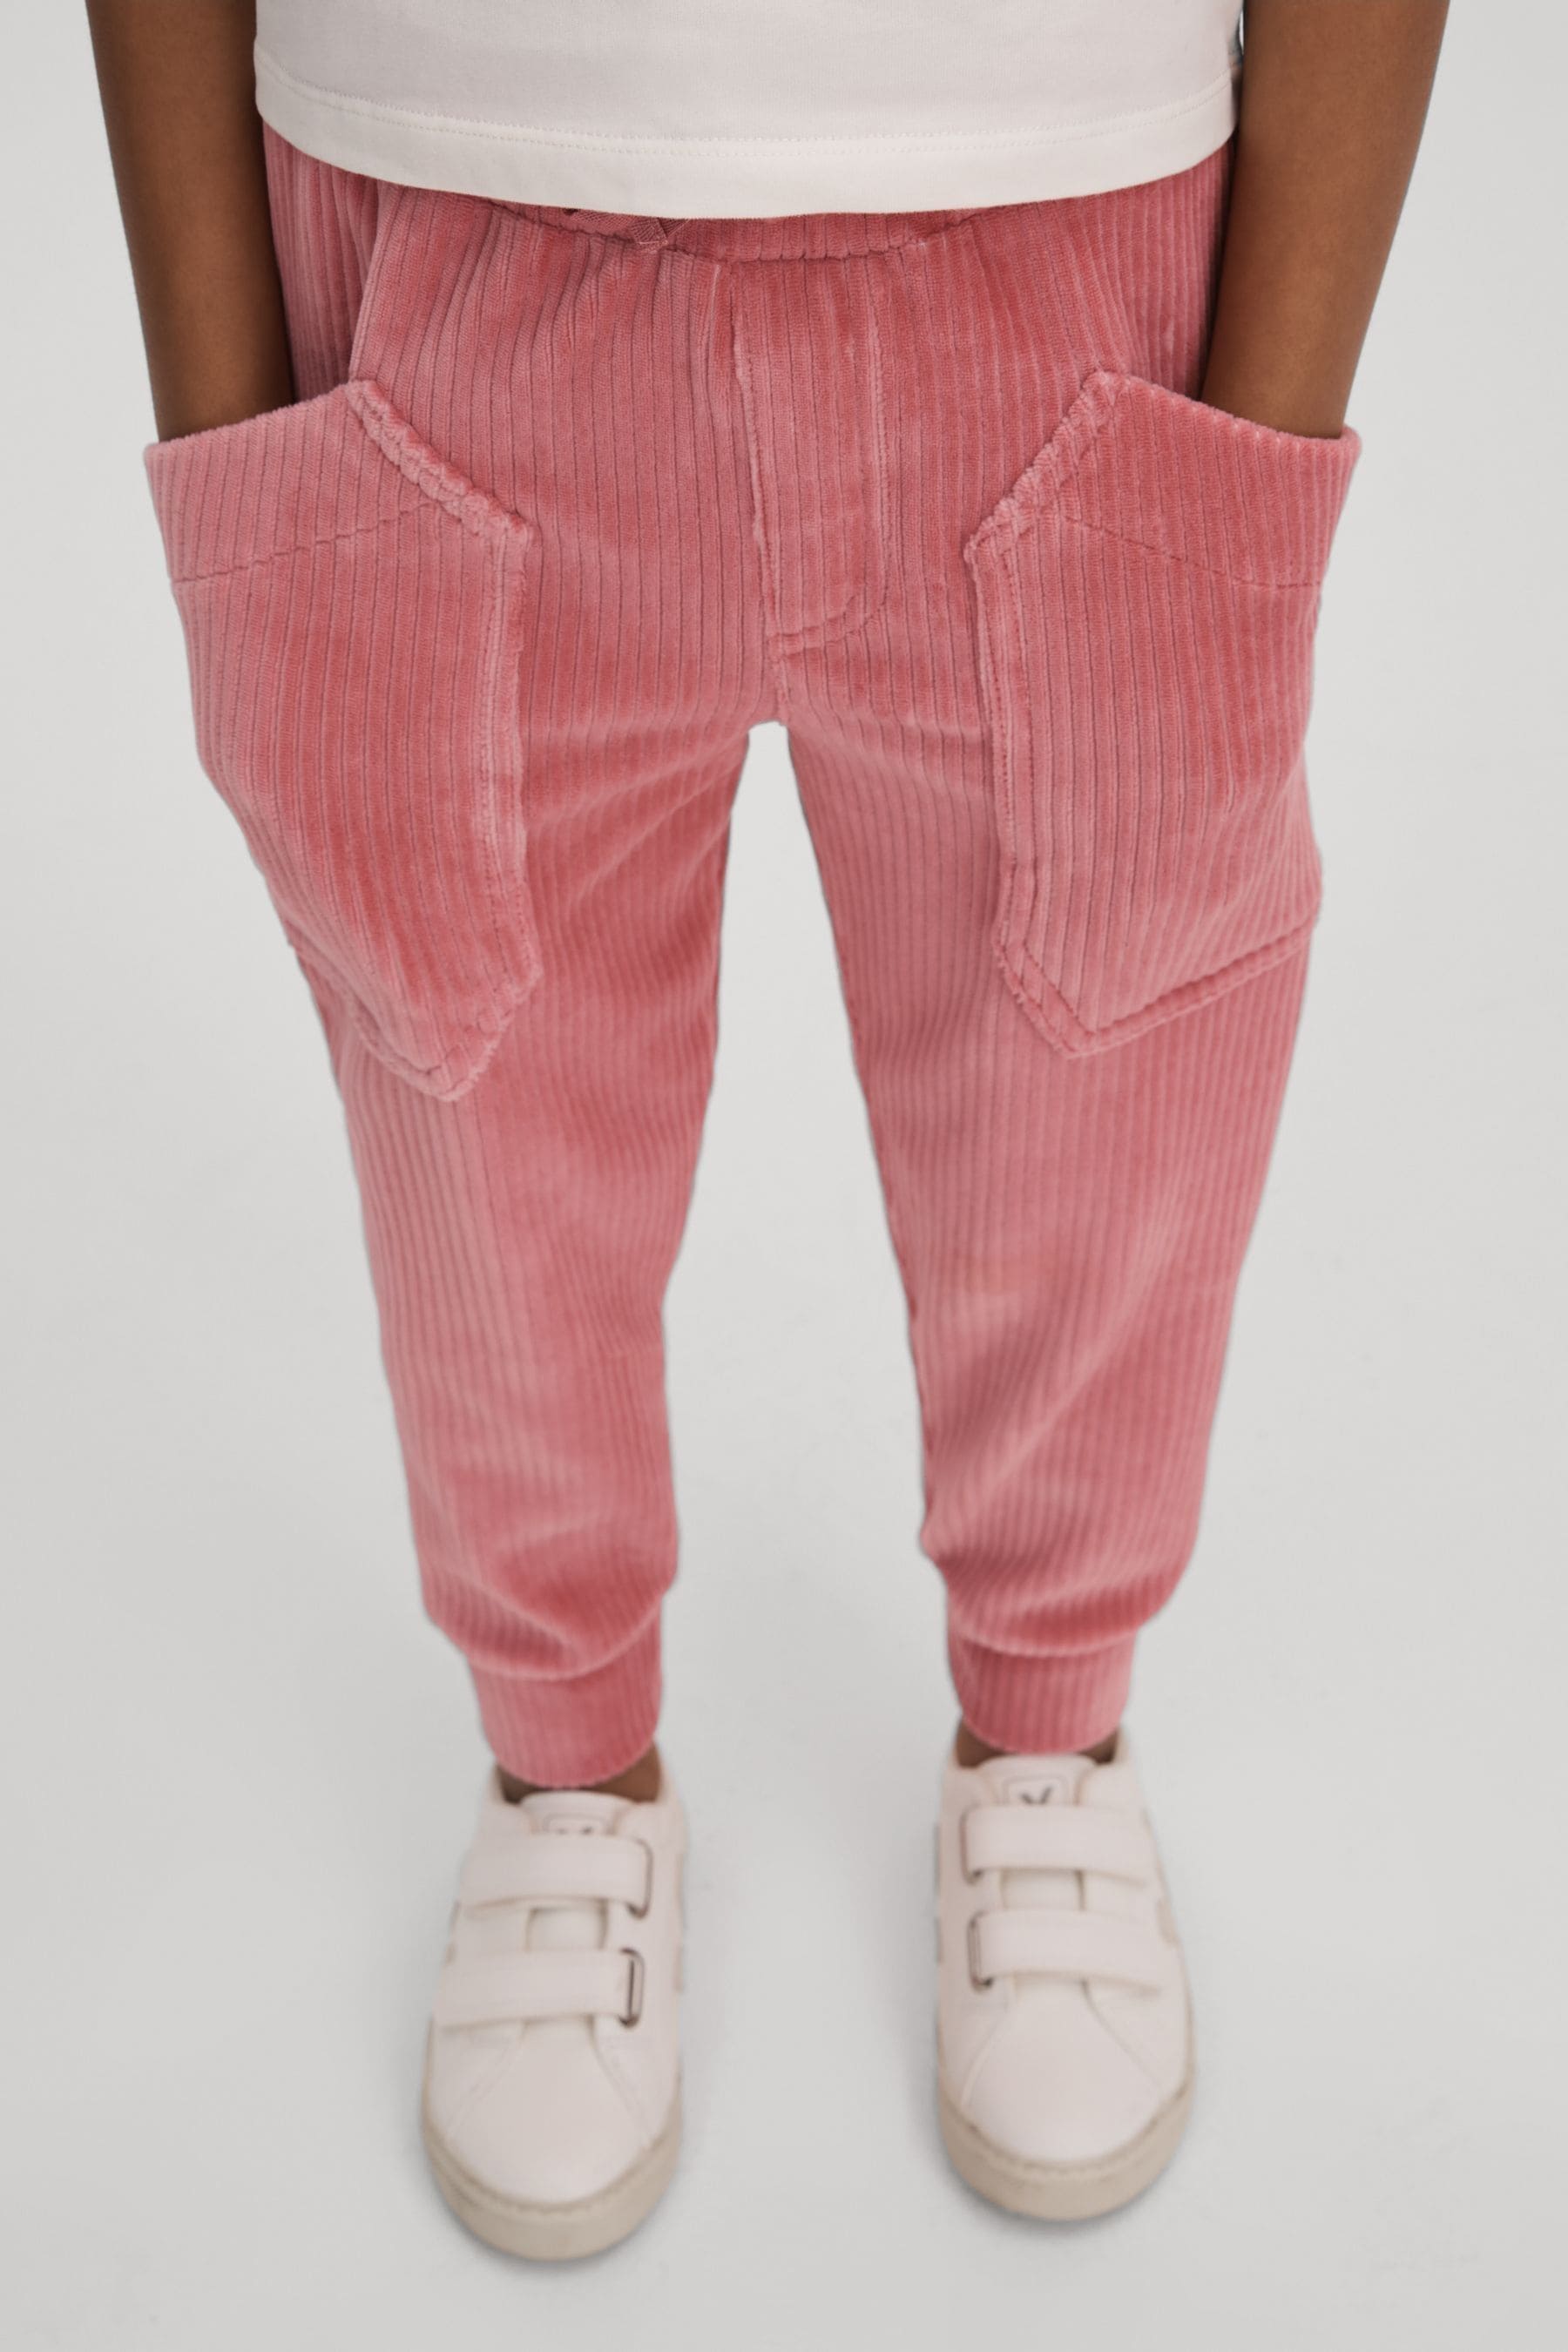 Reiss Kids' Kora - Pink Senior Relaxed Corduroy Drawstring Trousers, Uk 11-12 Yrs